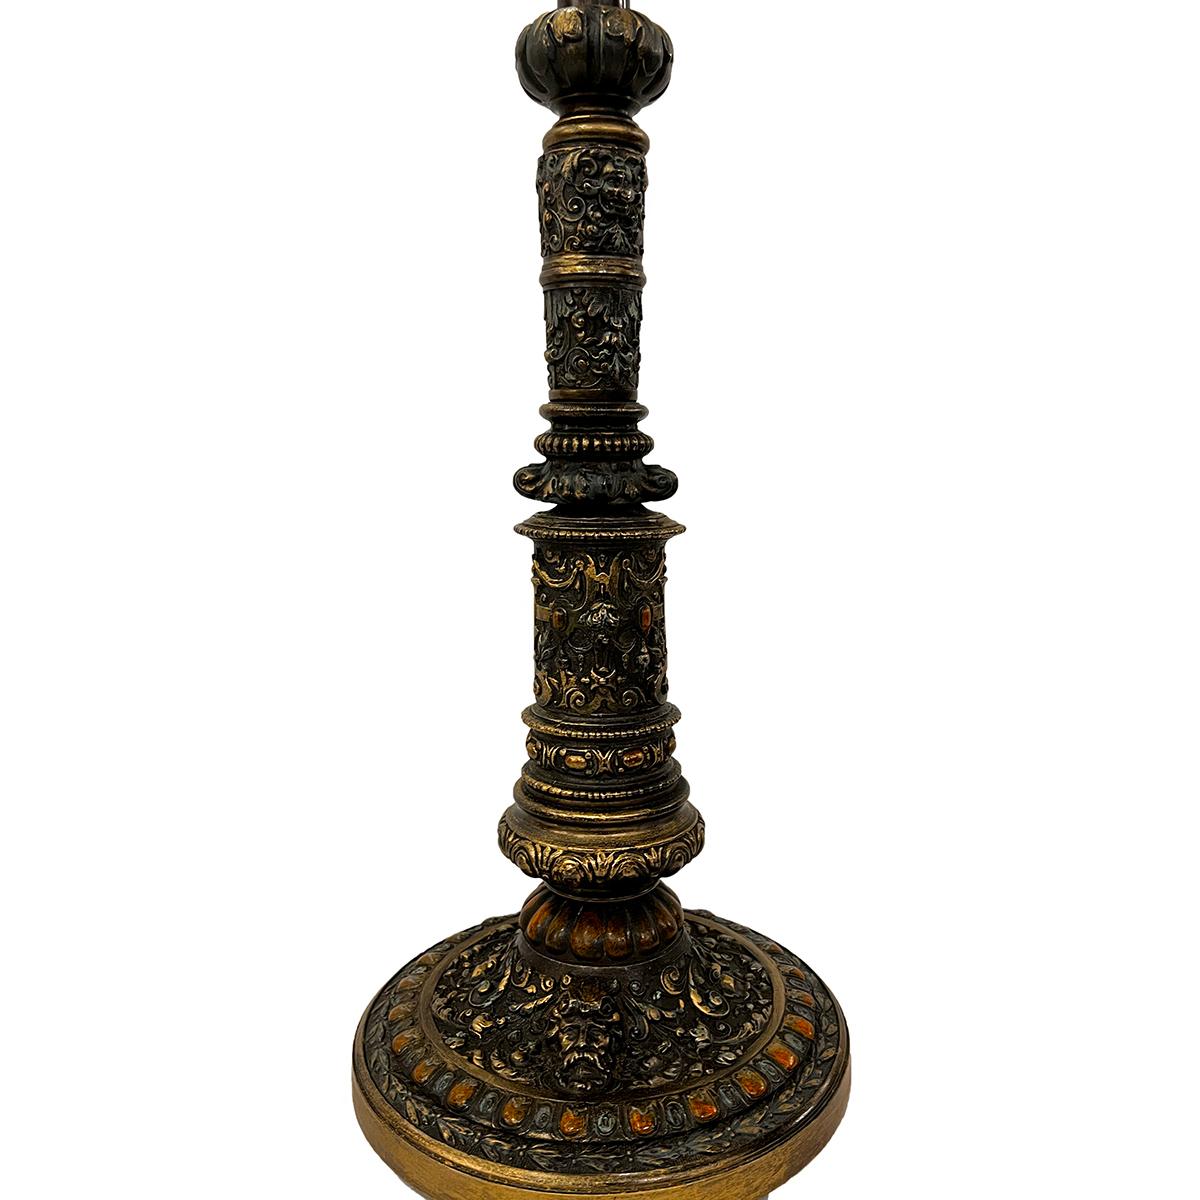 Lampe en métal moulé de la fin du XIXe siècle, avec un motif héraldique sur le corps.

Mesures :
Hauteur du corps : 16